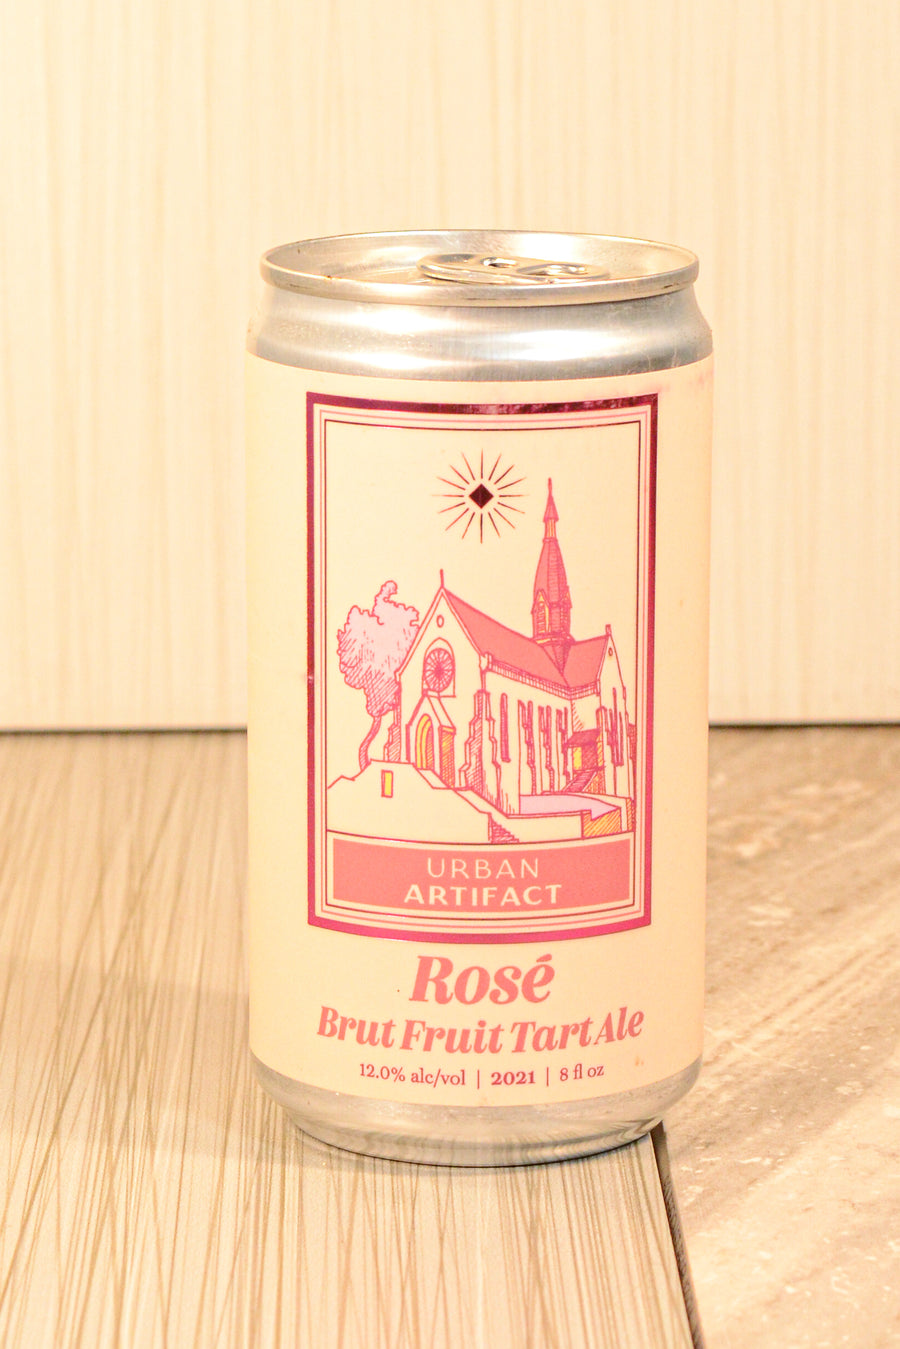 Urban Artifact, Rose Brut Fruit Tart Ale SINGLE